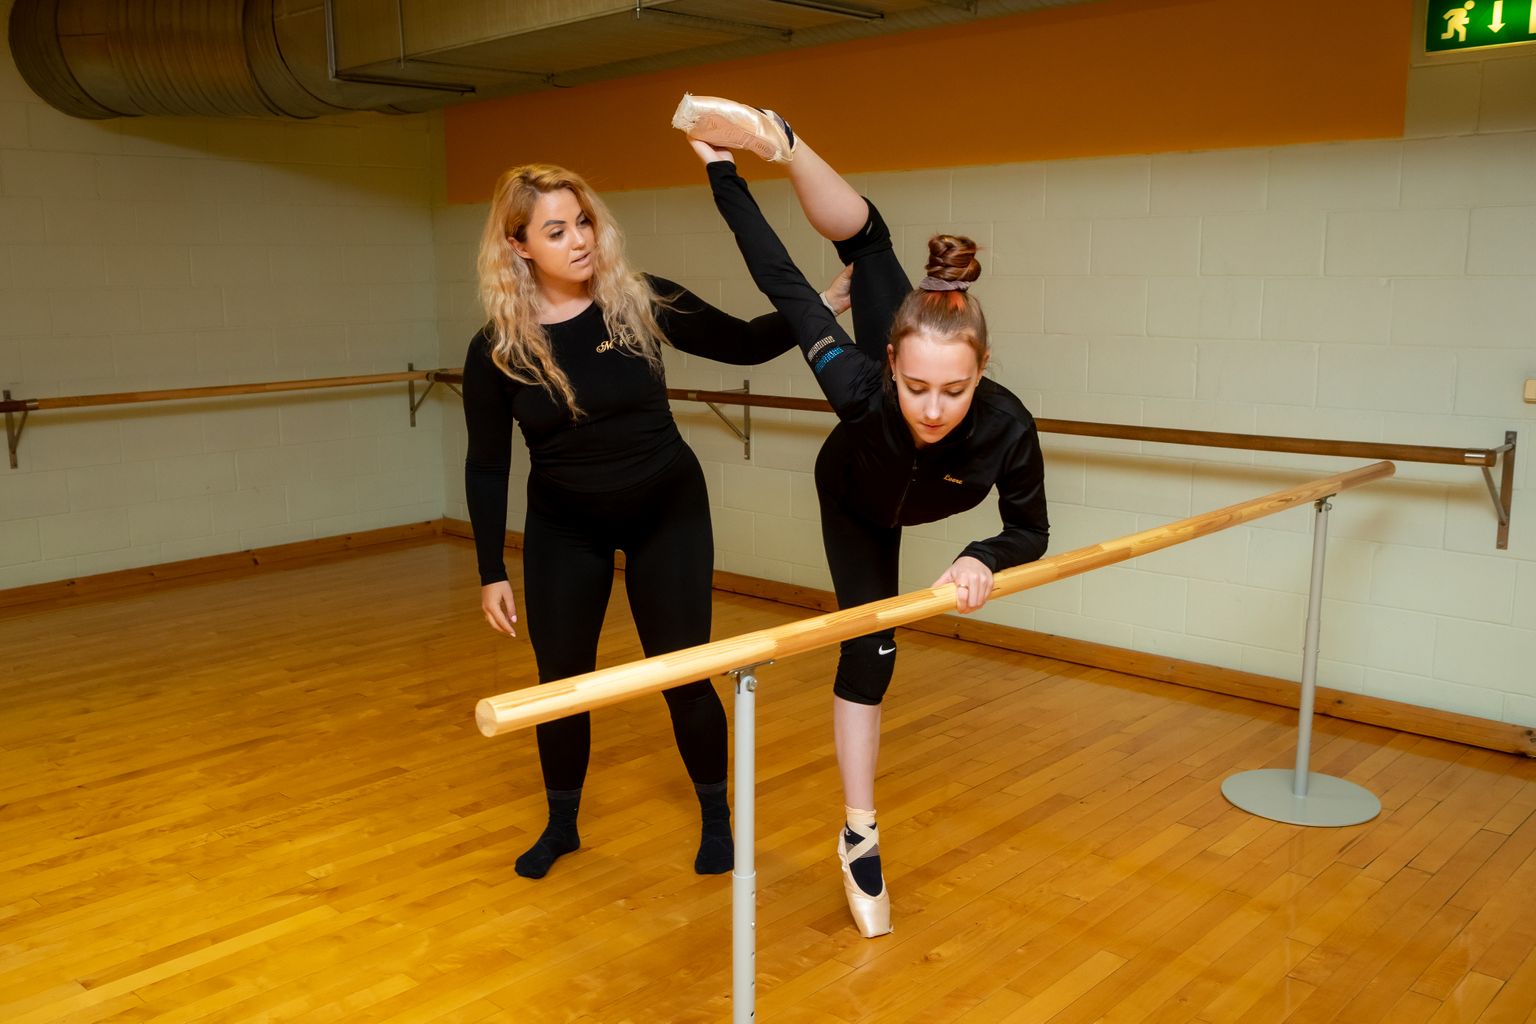 PAINDUVUS PEAB OLEMA GEENIDES: Maria Traumann ja Loore Nuut demonstreerivad, kuidas balletitreening käib.